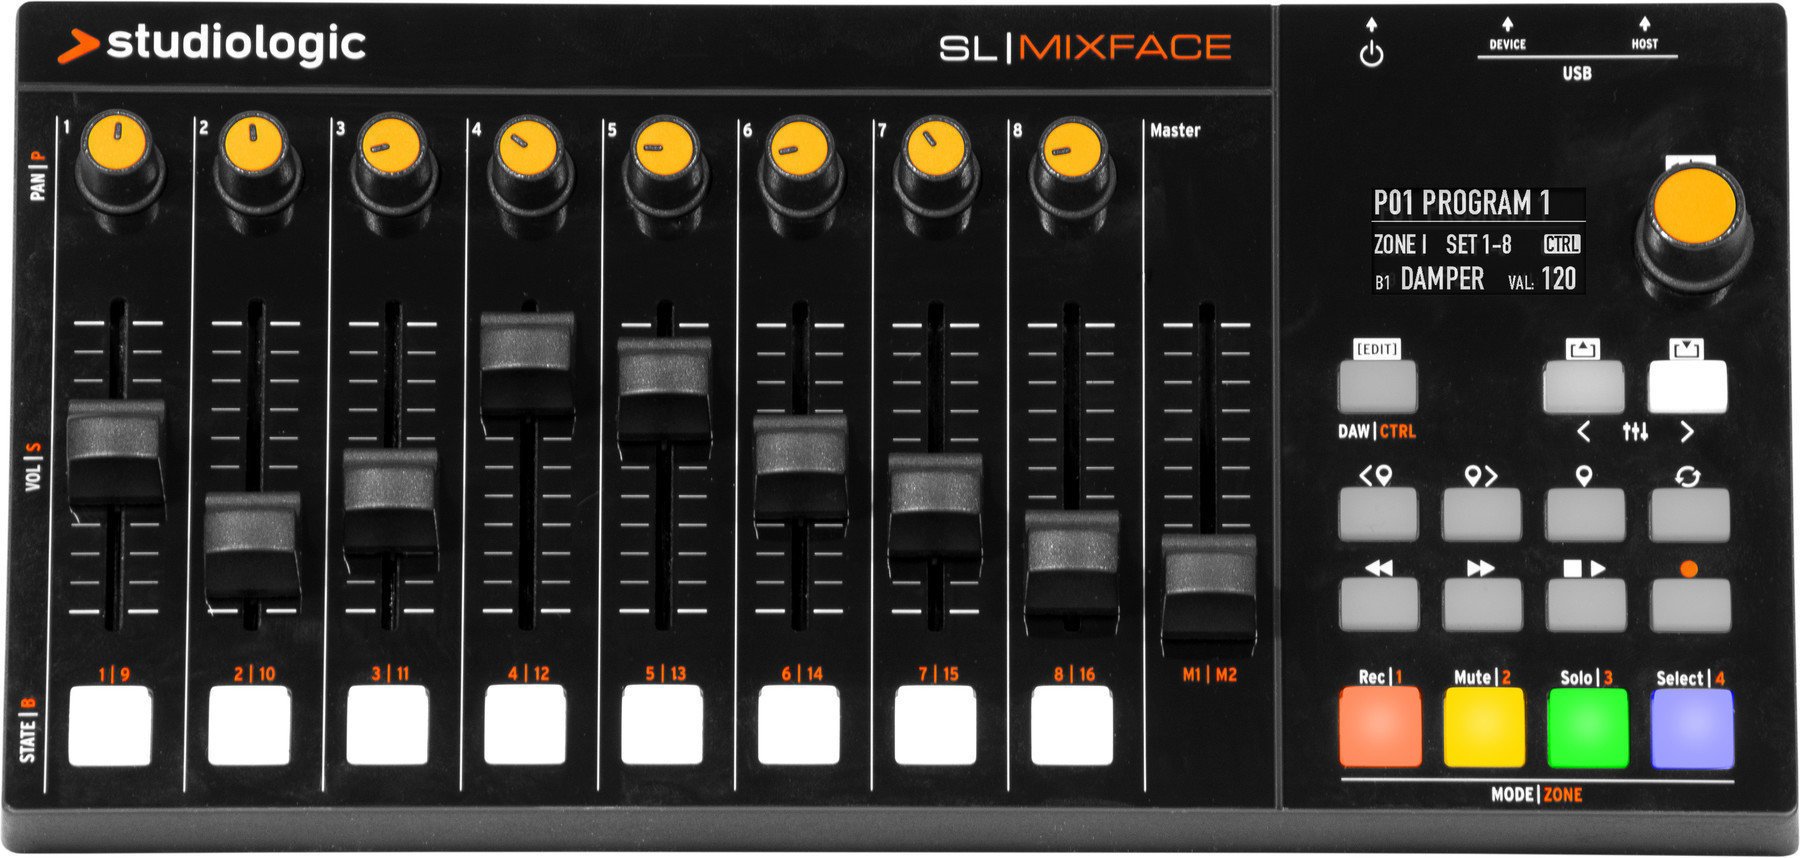 Udvidelsesenhed til keyboard Studiologic SL Mixface